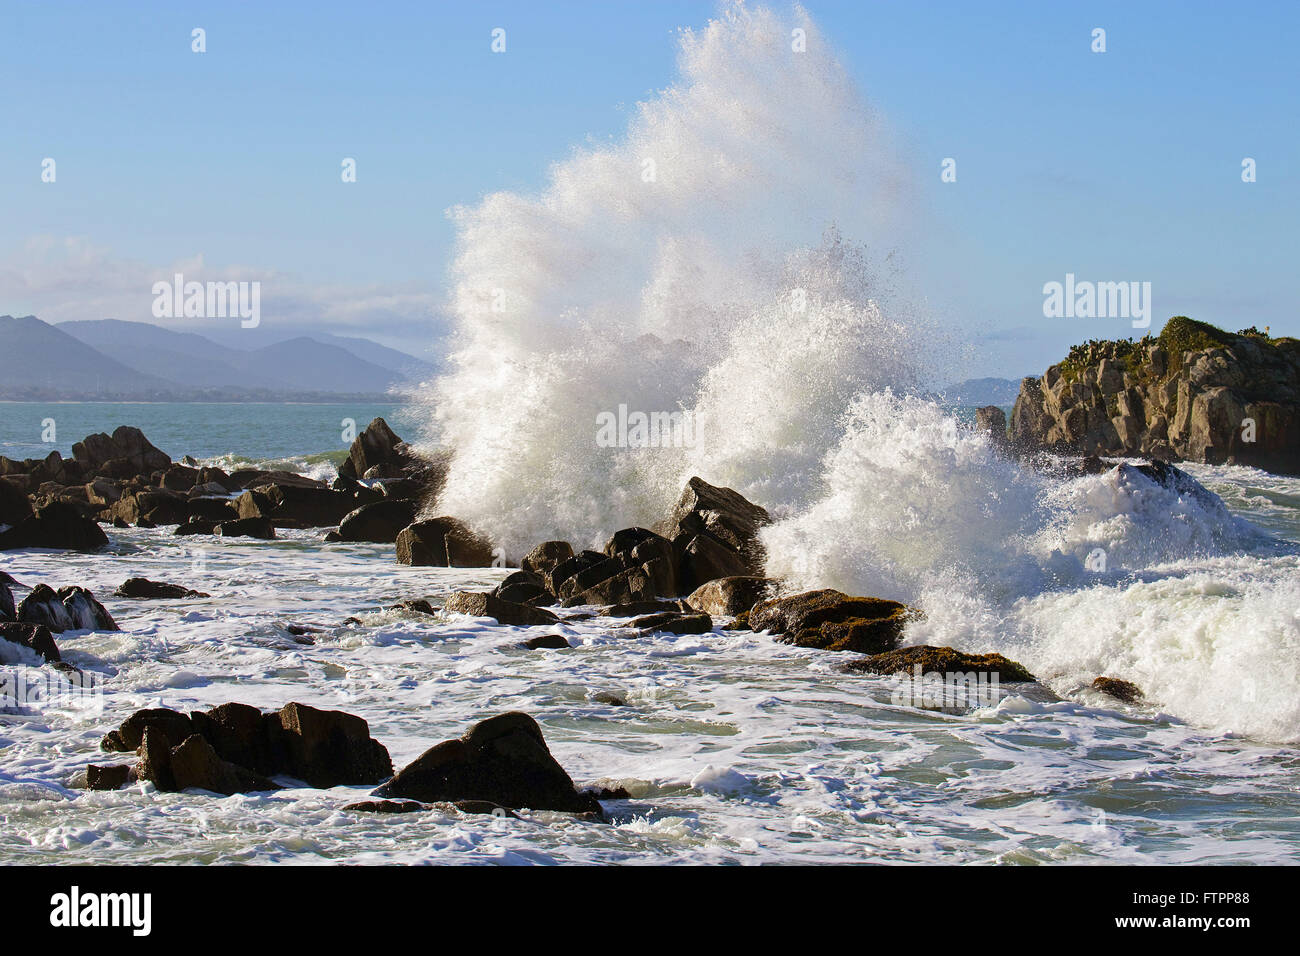 Oceano onde che si infrangono sulle rocce della spiaggia Armacao - il sud dell'isola Foto Stock